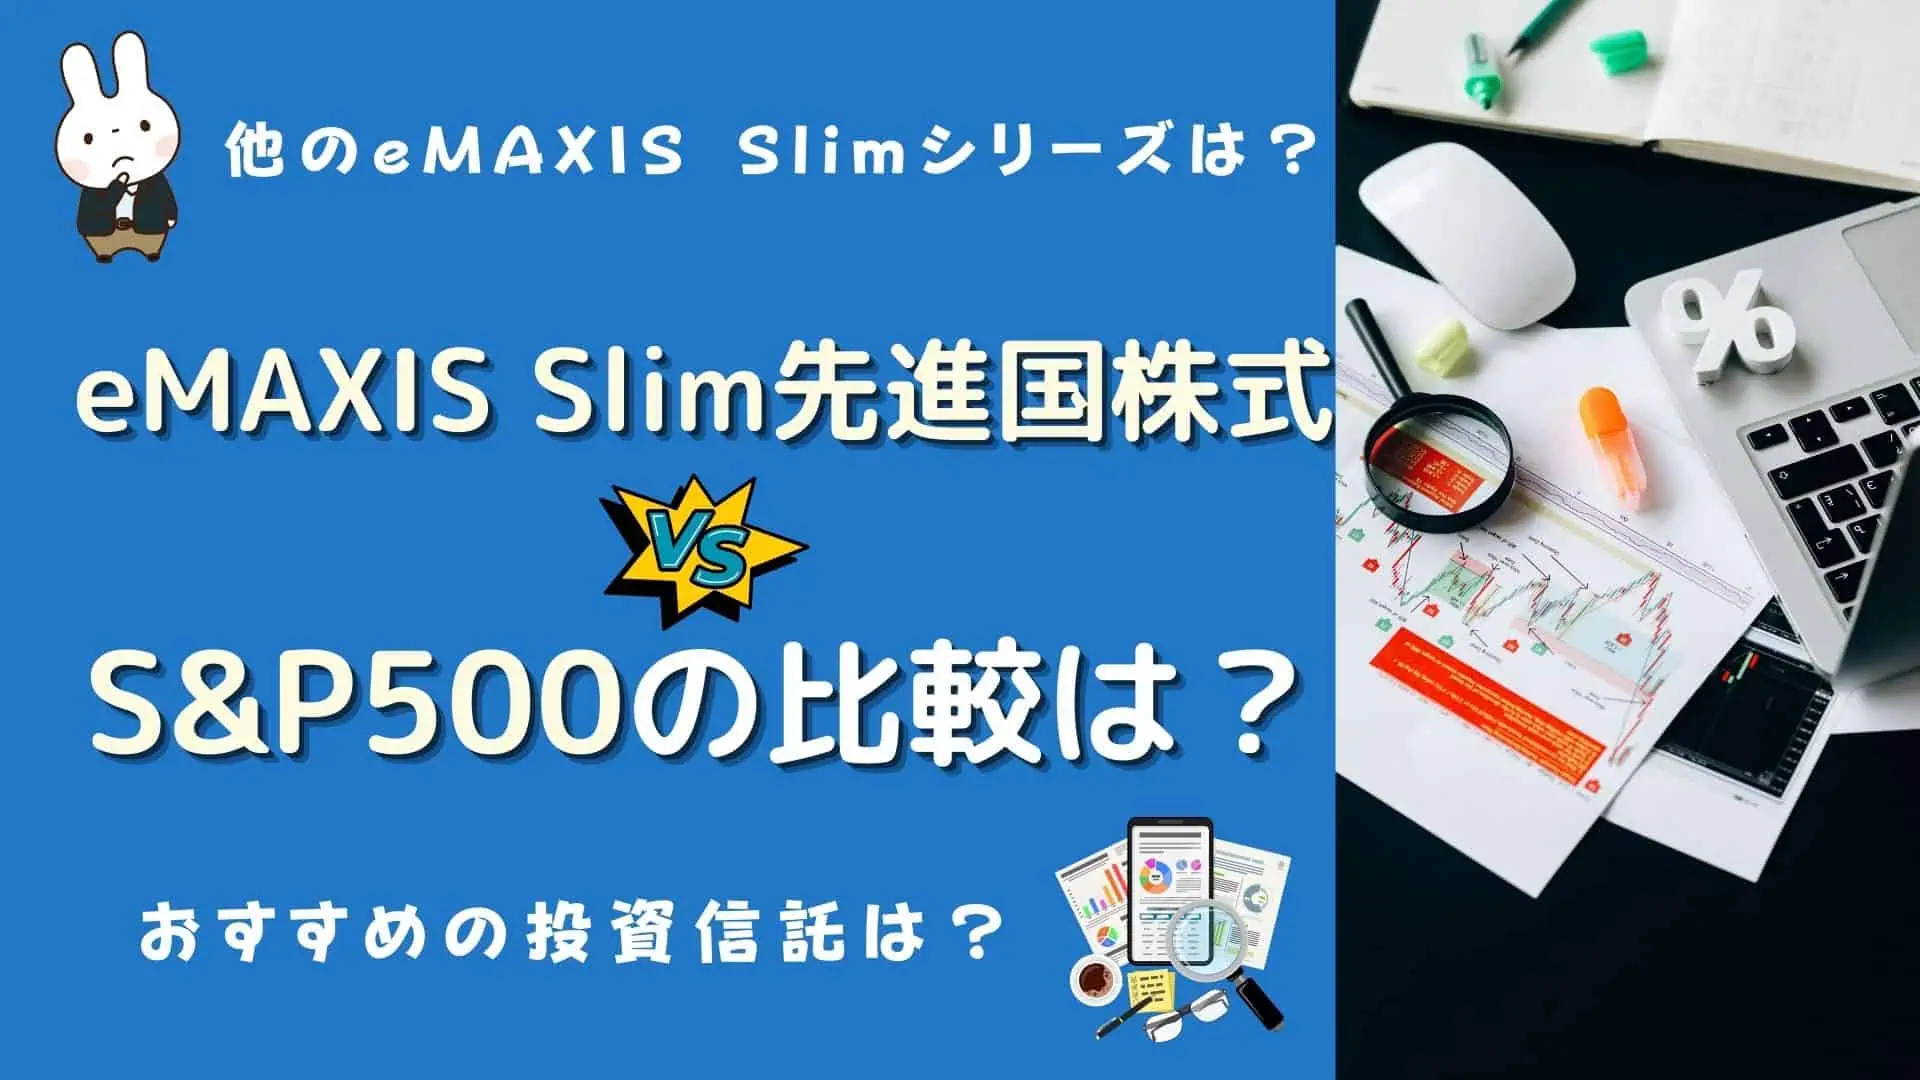 emaxis slim 先進国株式インデックス s&p500 比較